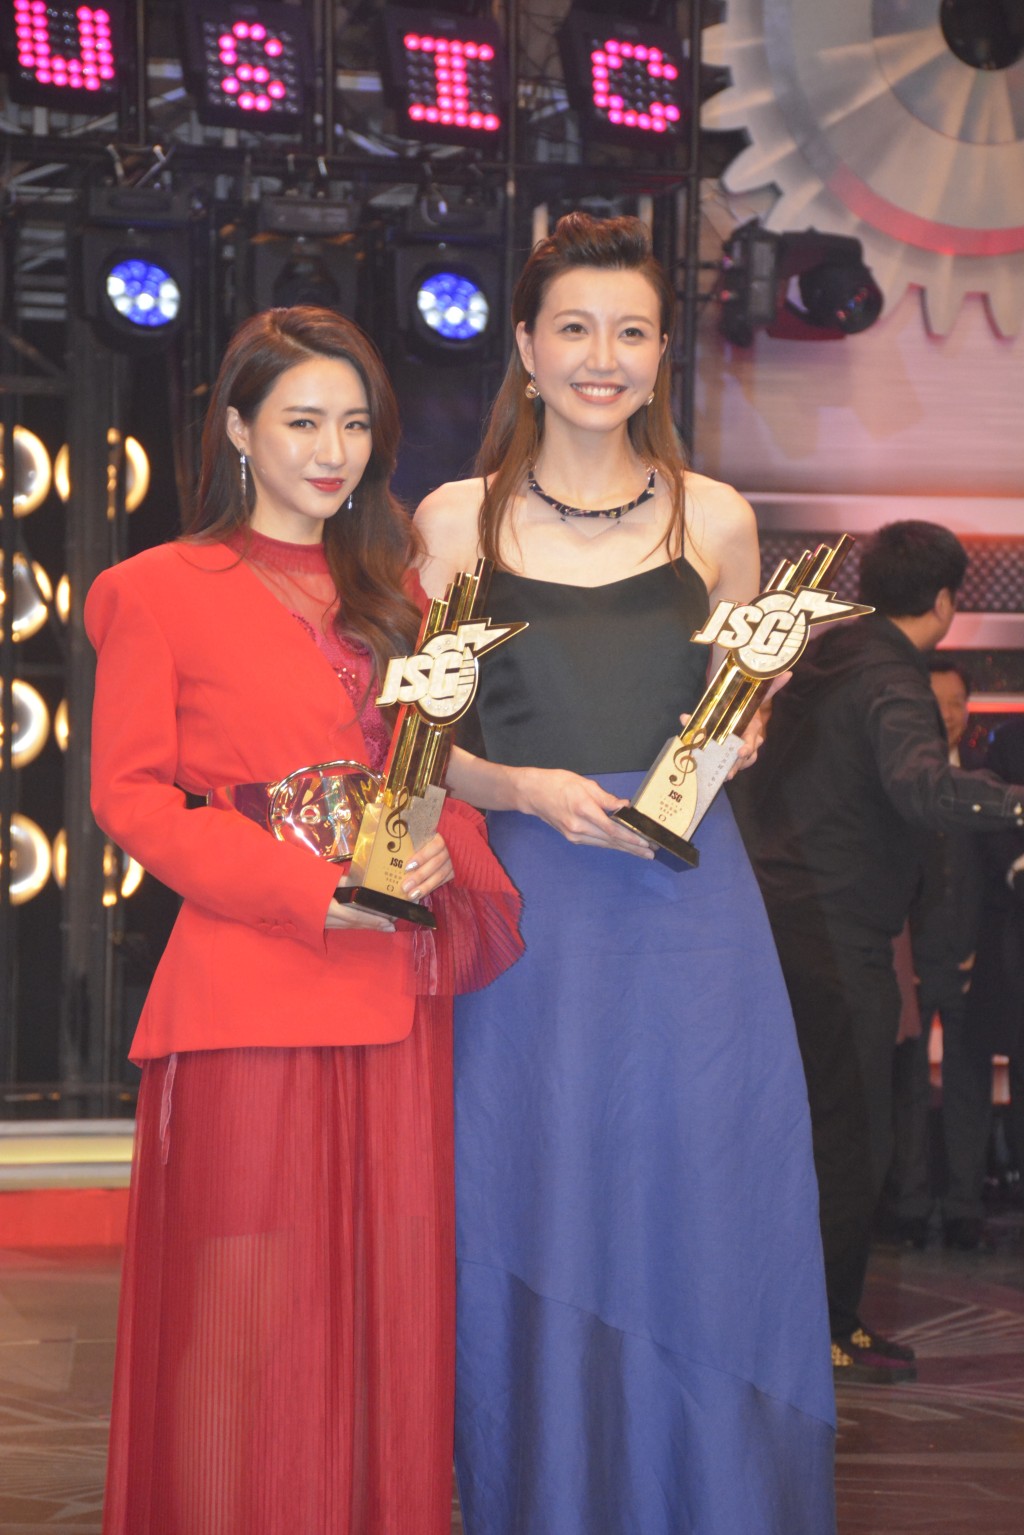 菊梓乔在《2018年度劲歌金曲颁奖典礼》获得「最受欢迎女歌星」奖。